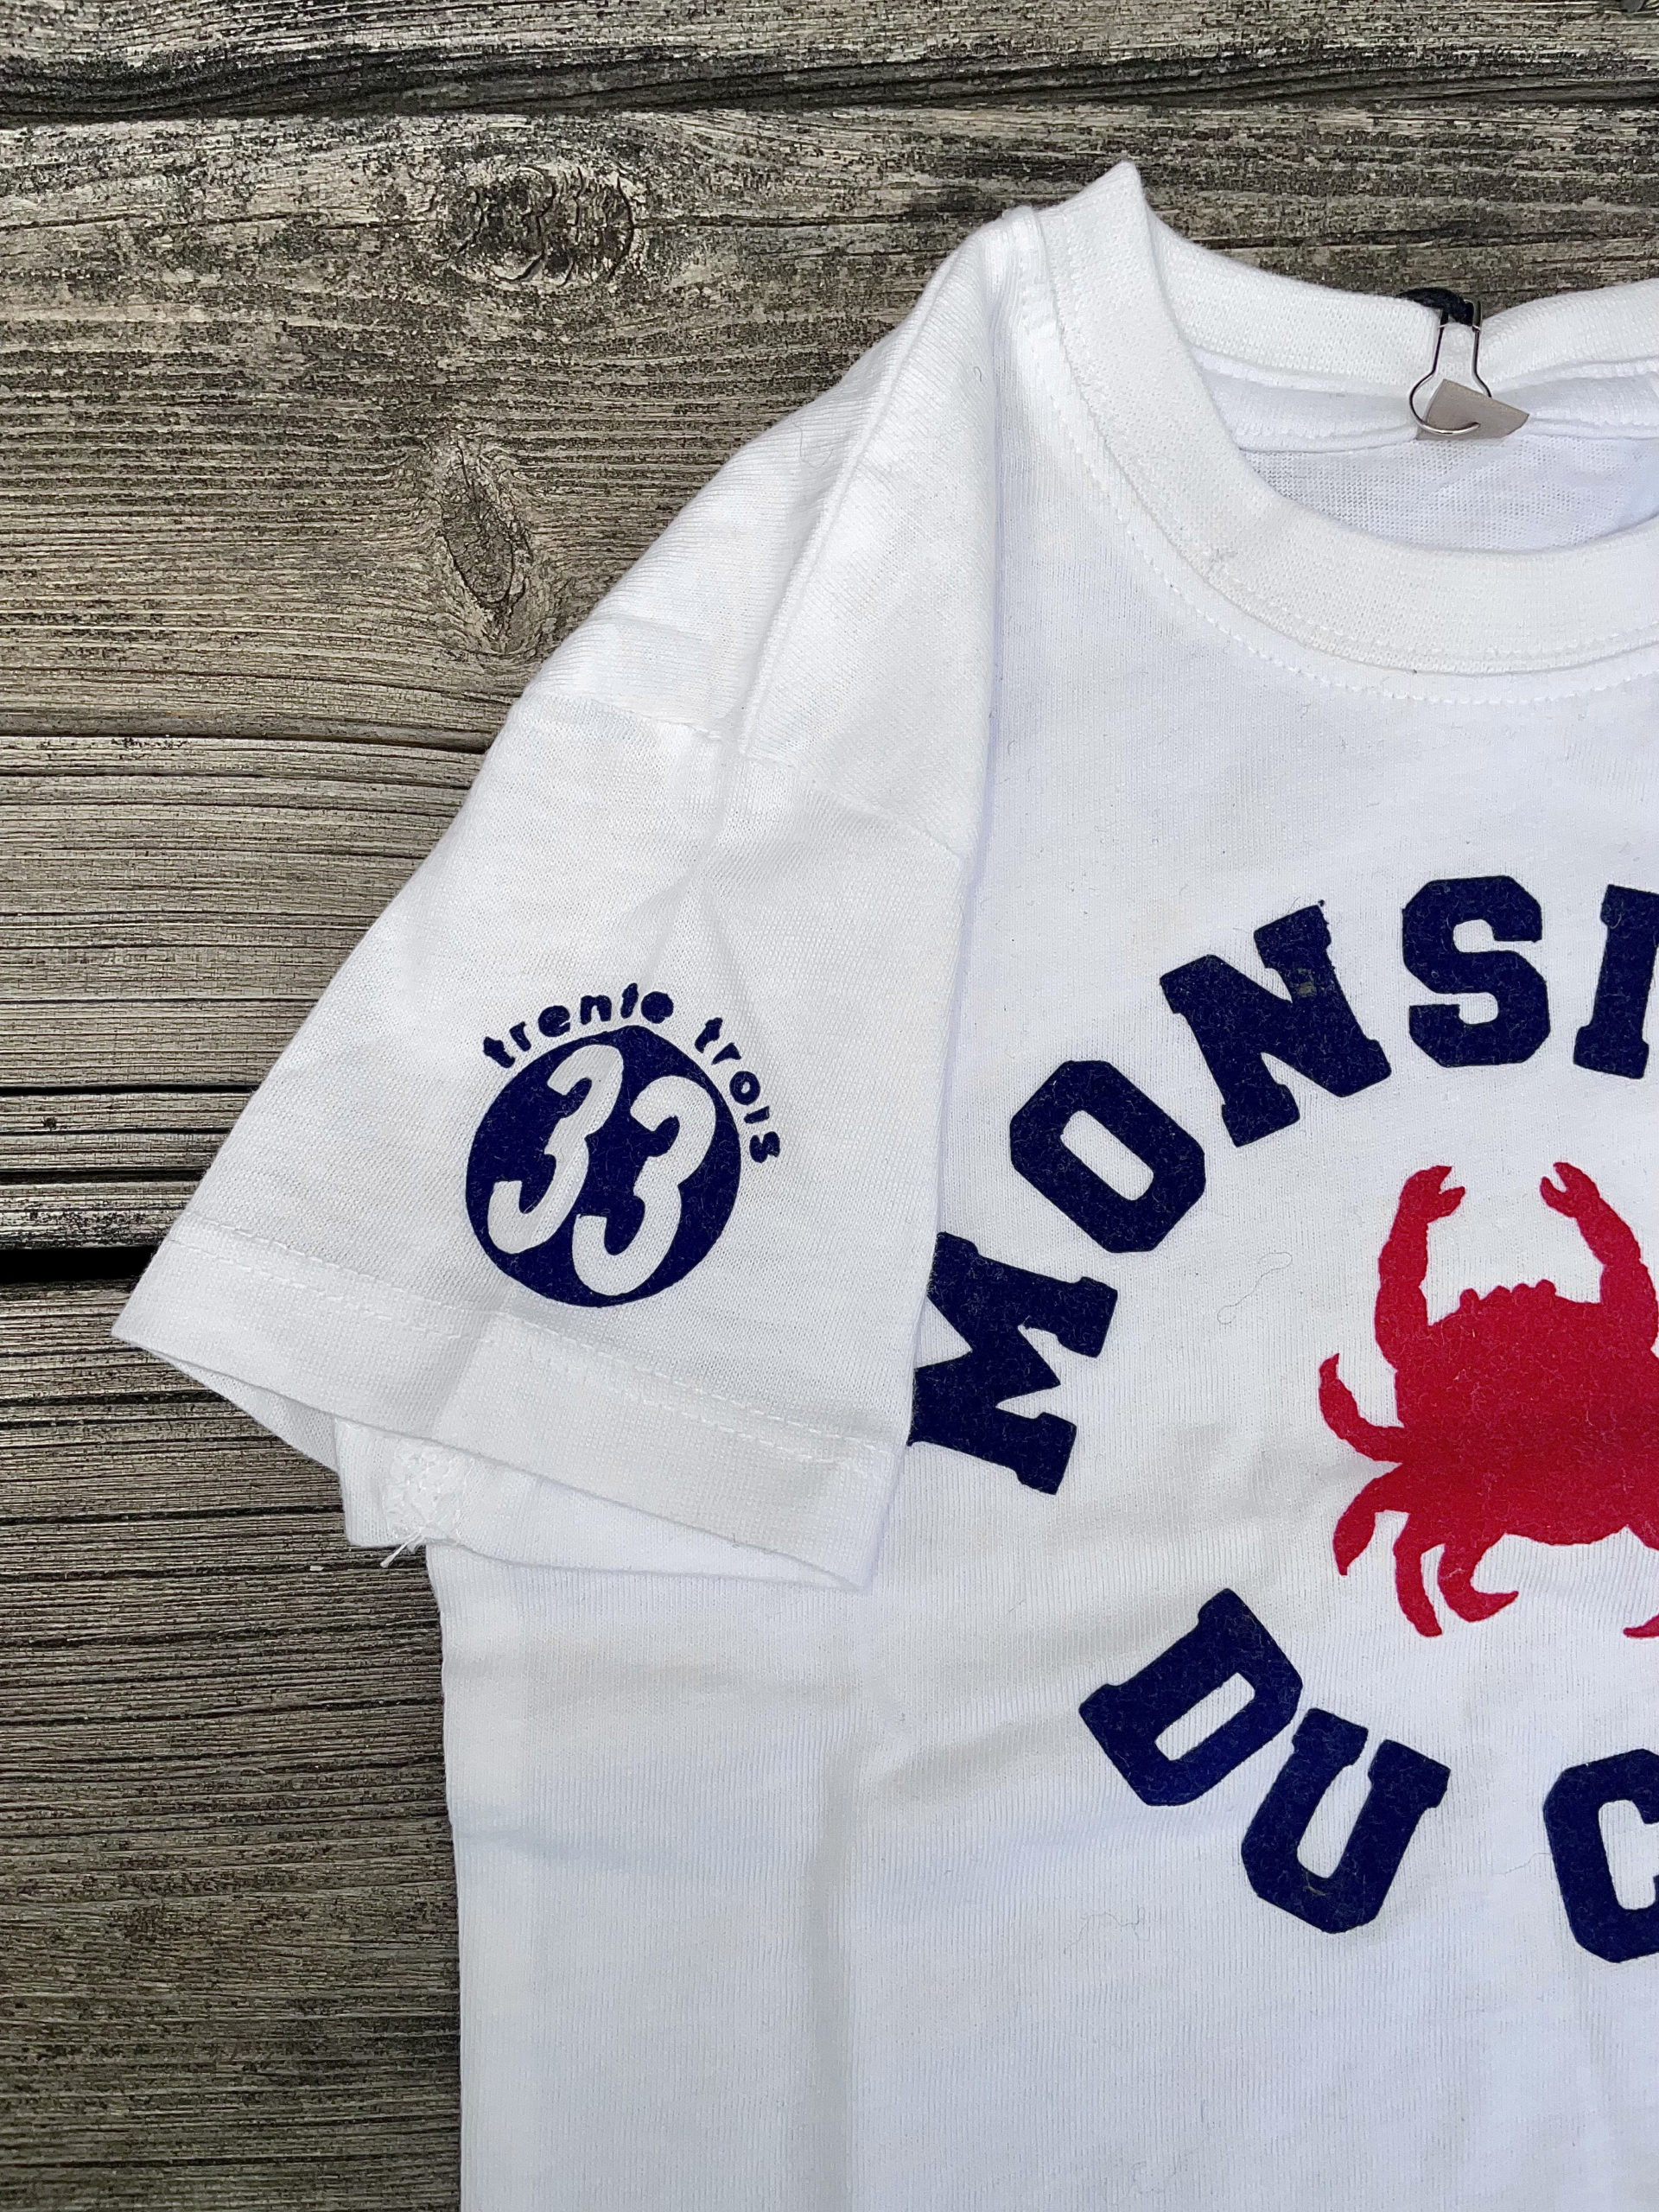 Un tee-shirt blanc pour bébé, estampillé "Monsieur du Cap" de la marque régionale 33.